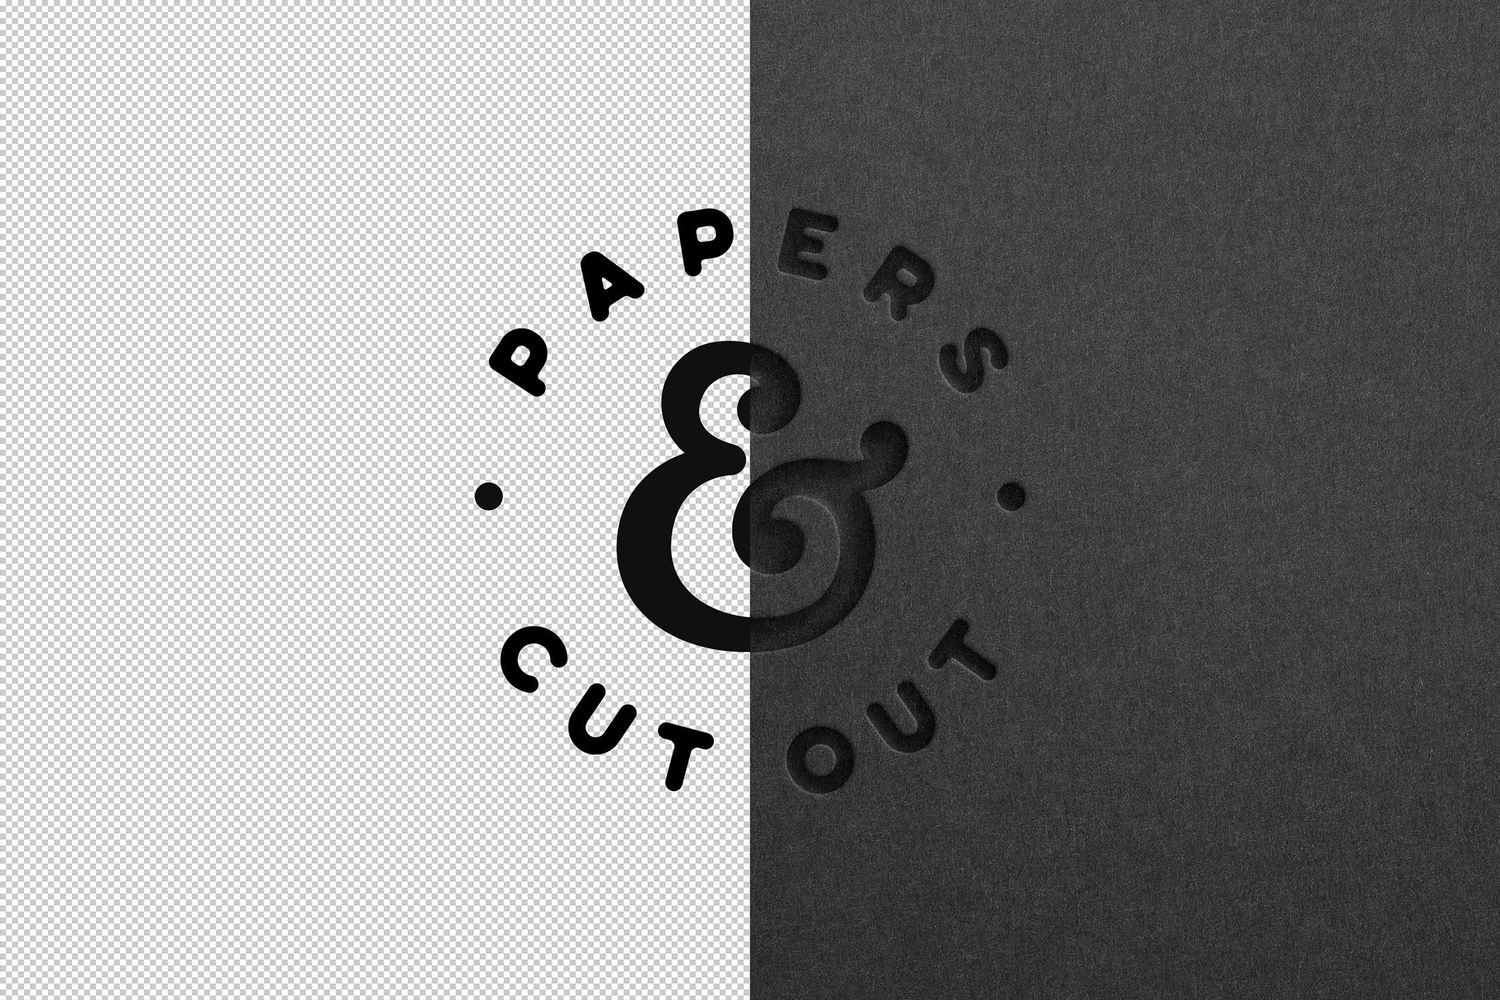 5004 深色凹印LOGO特效印刷工艺展示PS样机 Dark Cut Out Paper Mockup@GOOODME.COM